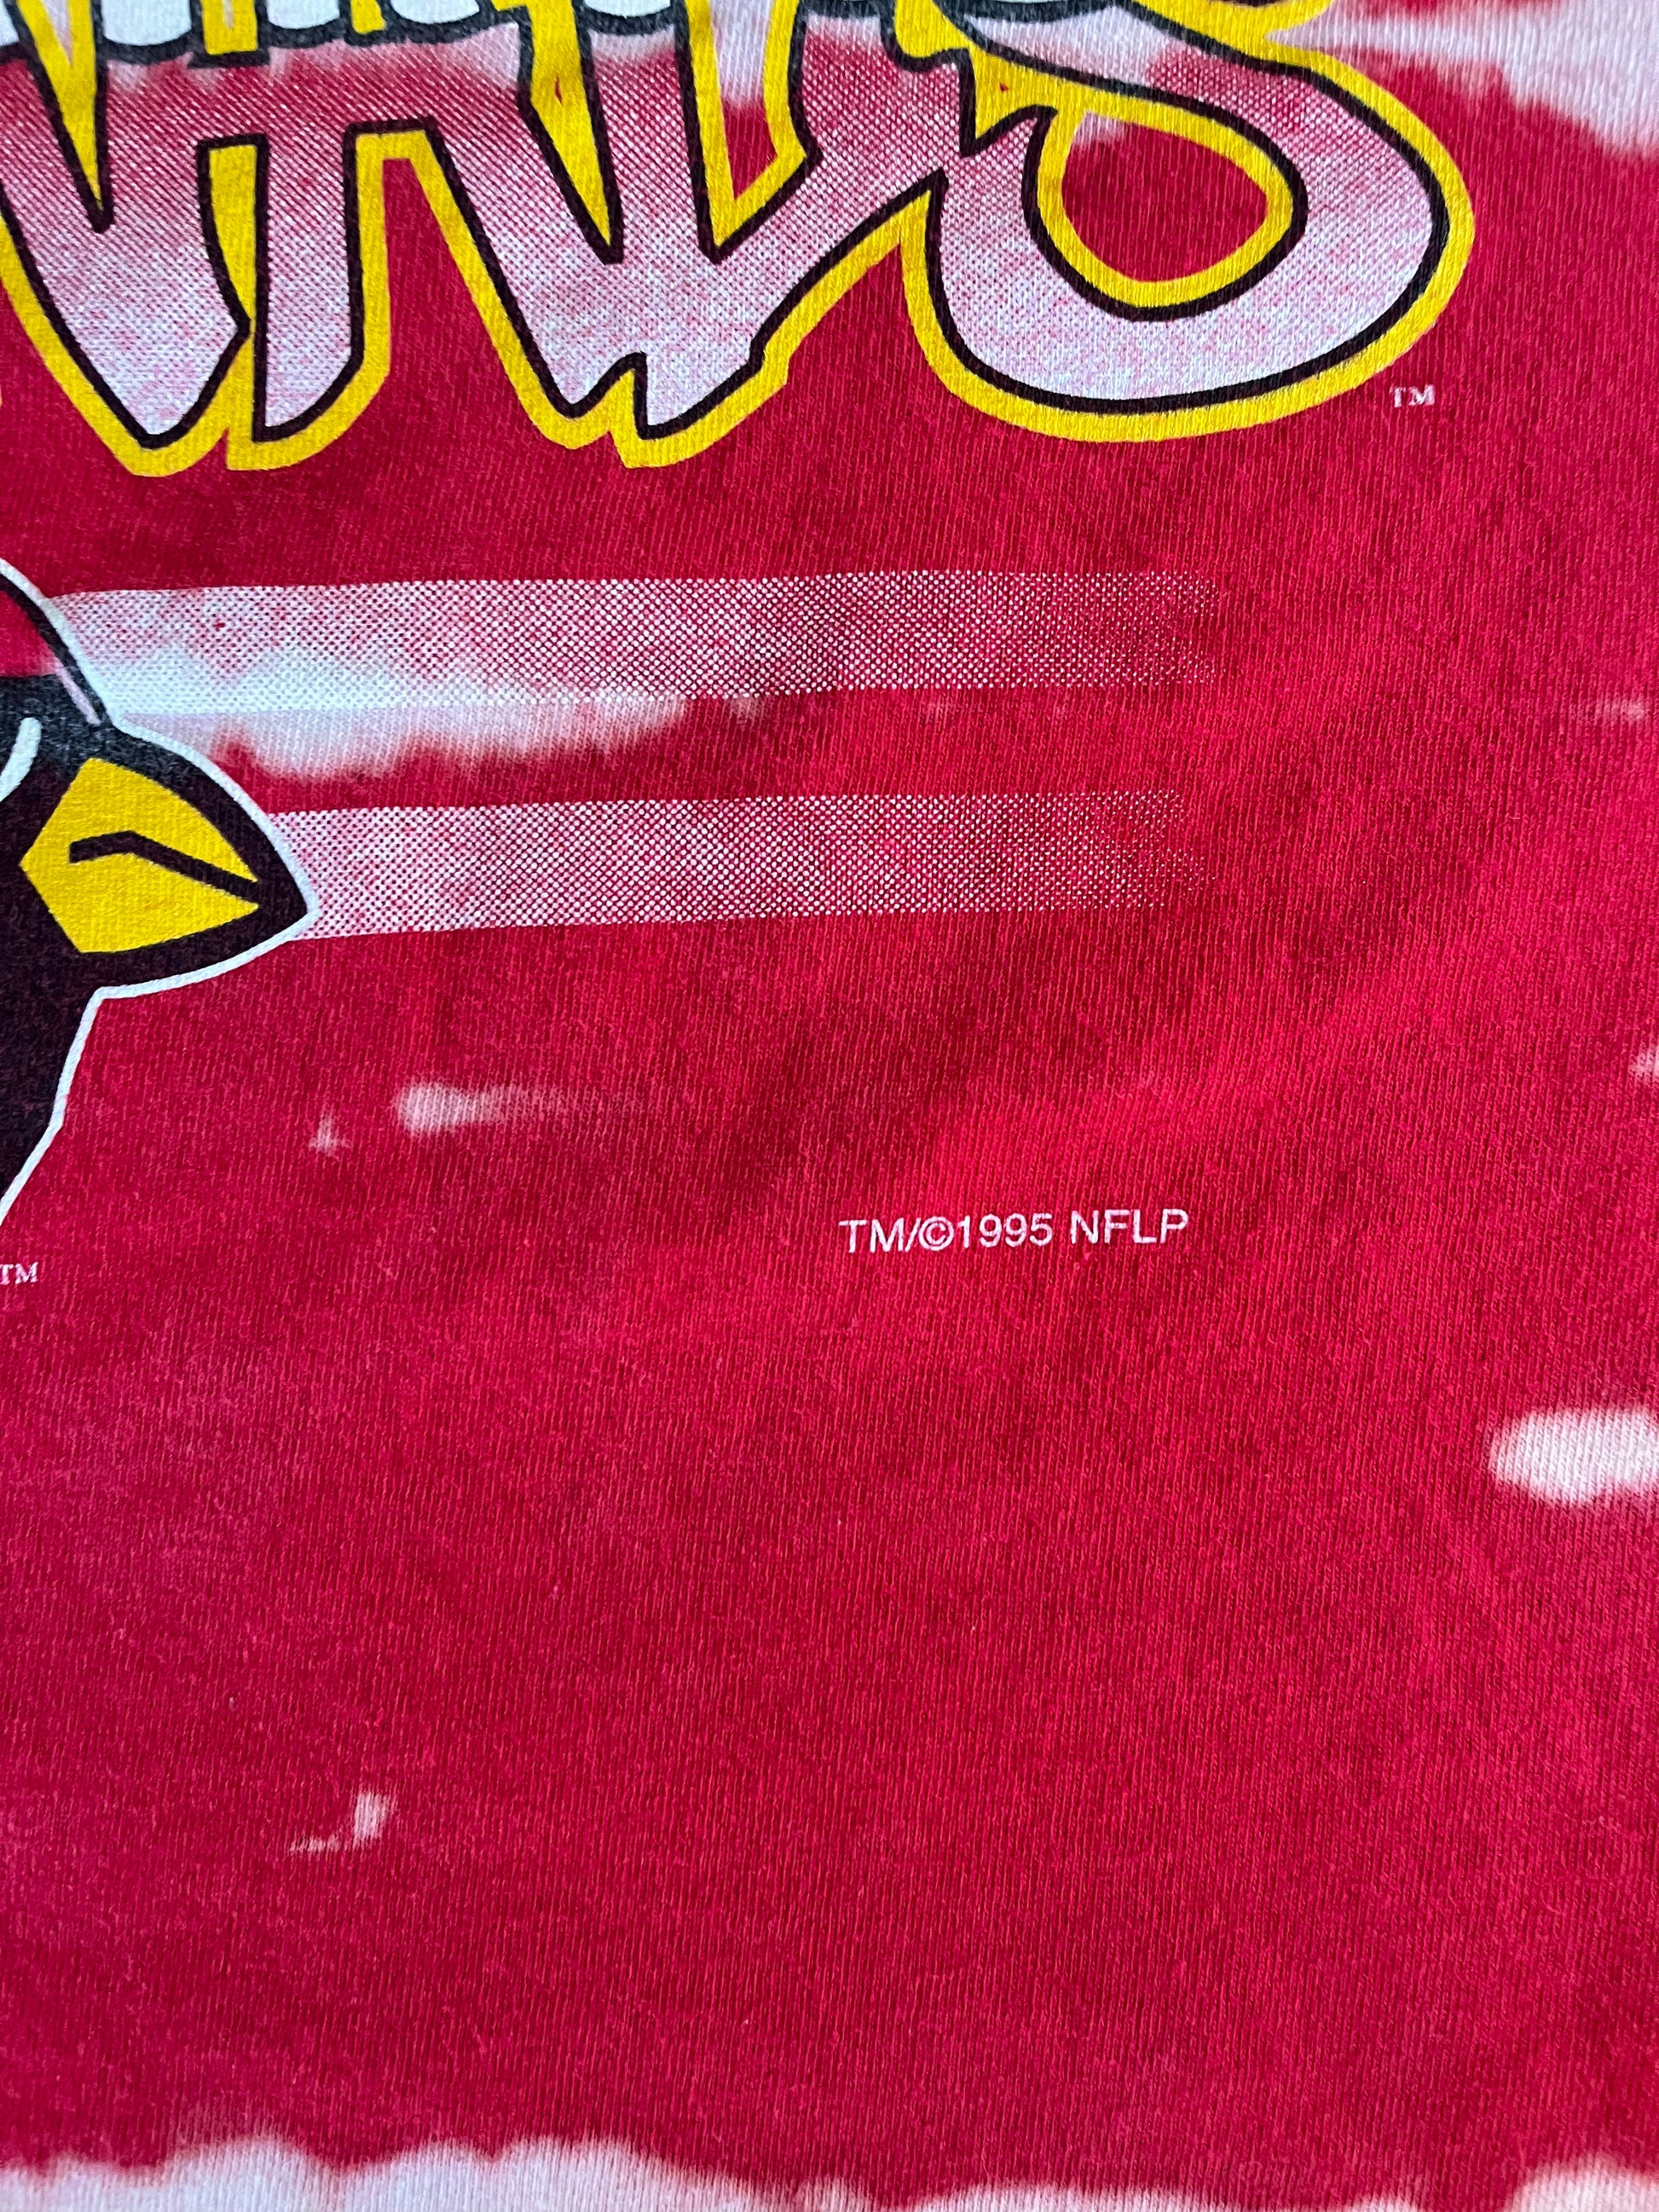 vintage arizona cardinals tank top football shirt nfl for women and men 